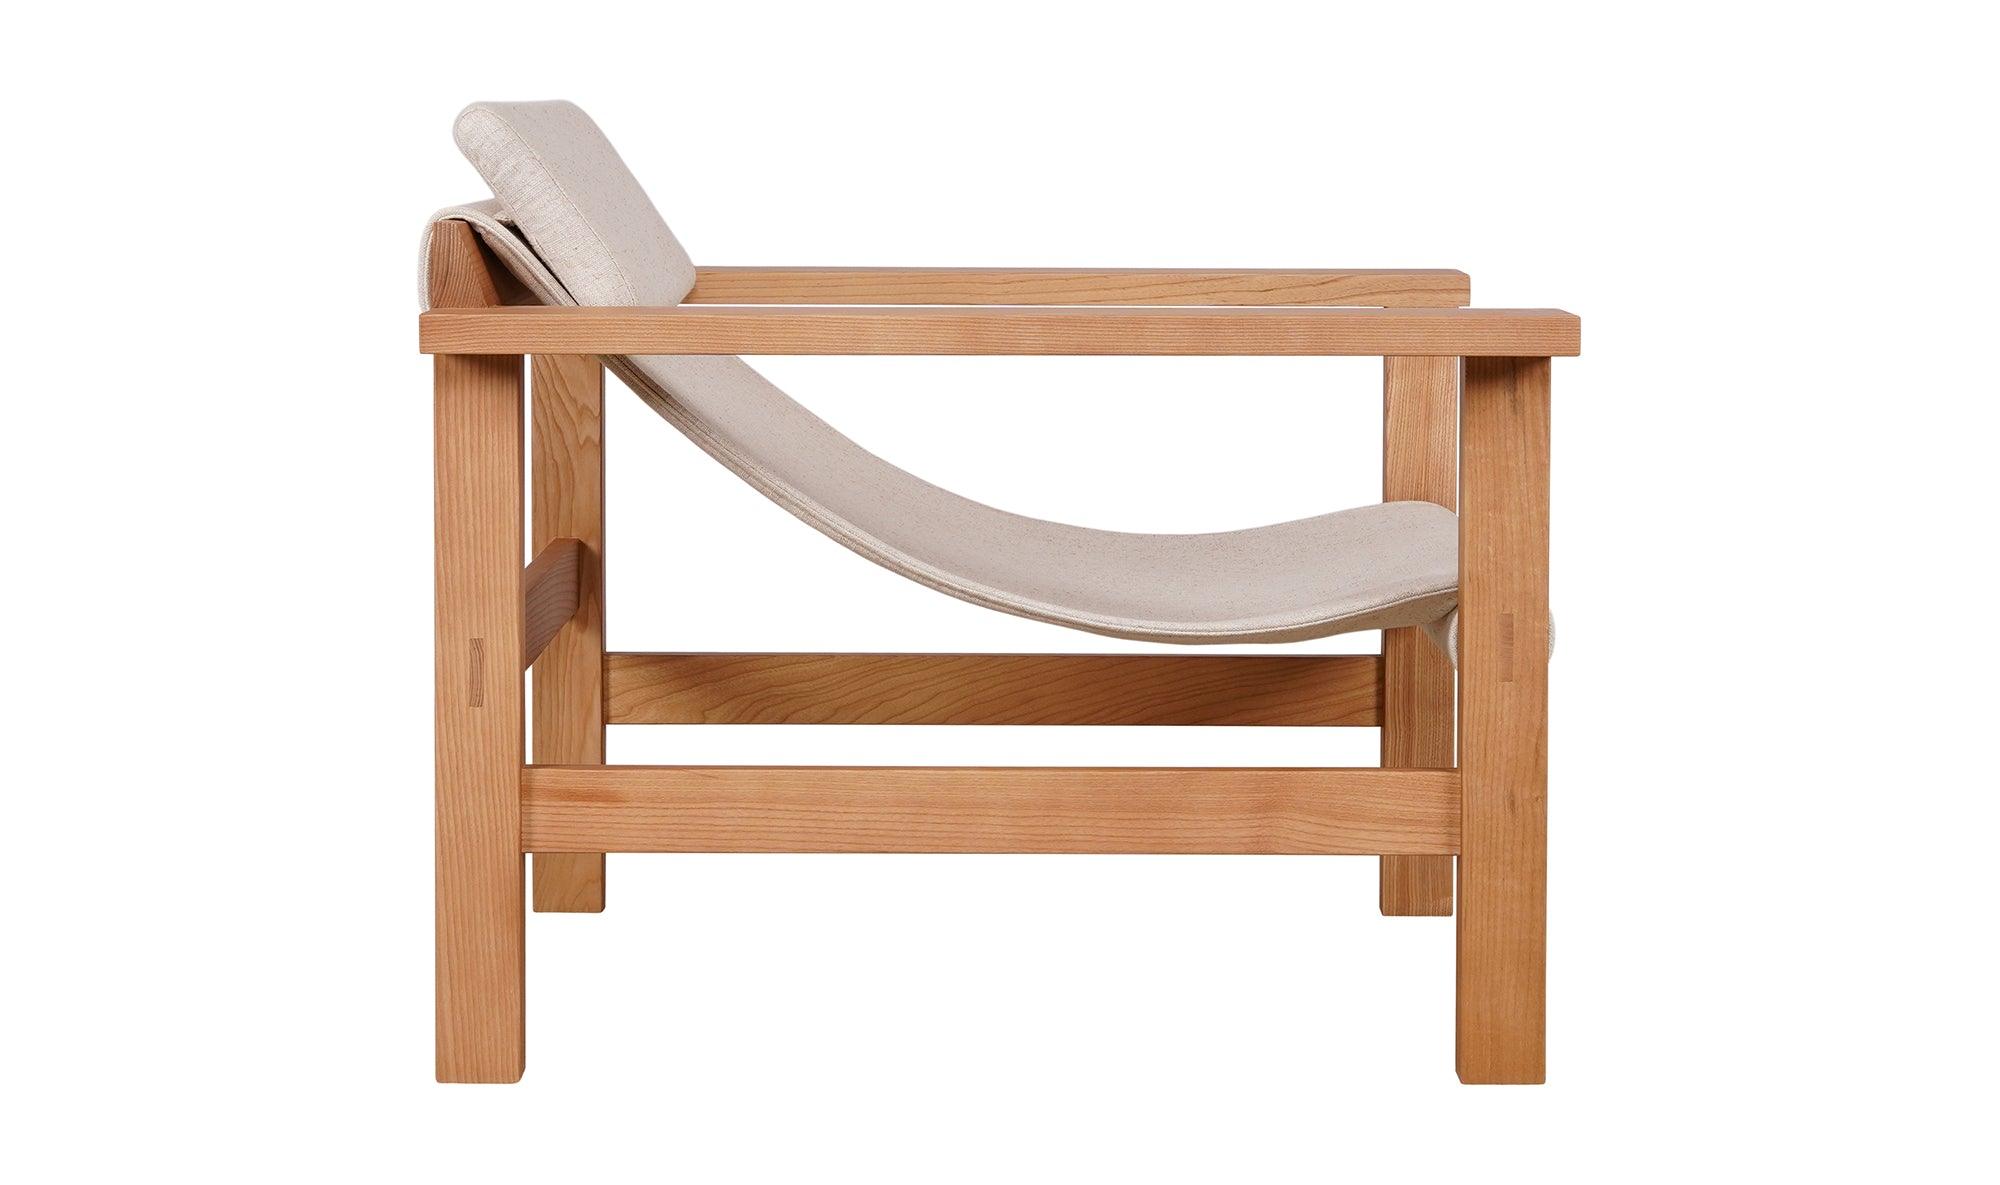 Rosedale Lounge Chair, Flecked Linen - Kömfi